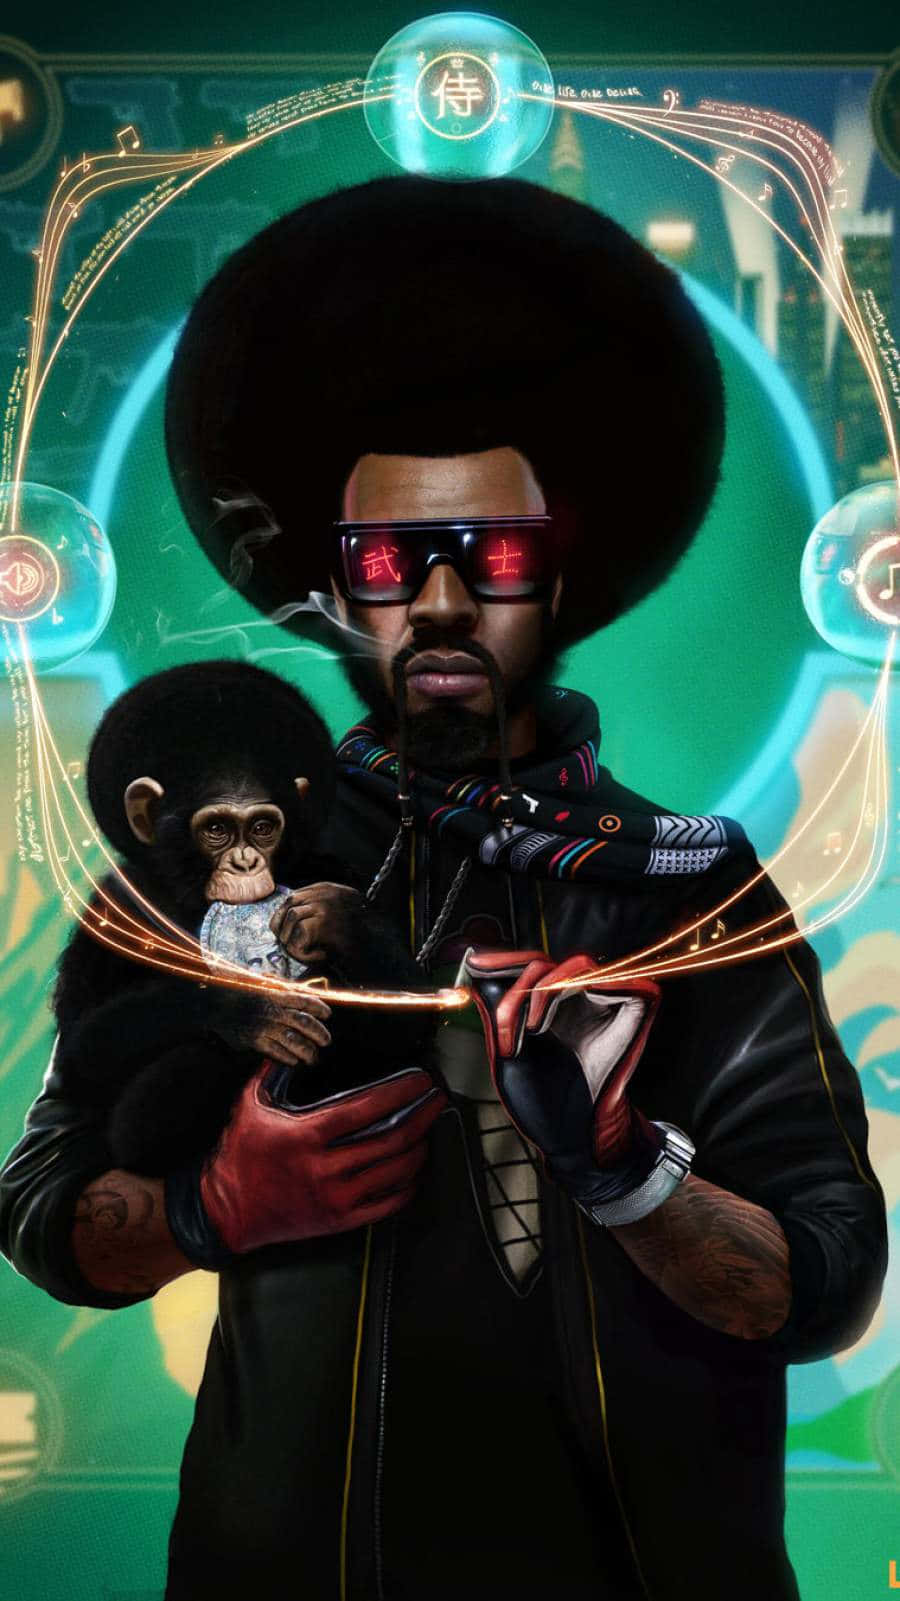 Kanye West er stolt ved at holde hans futuristiske Yeezy flagskib iPhone tapet. Wallpaper